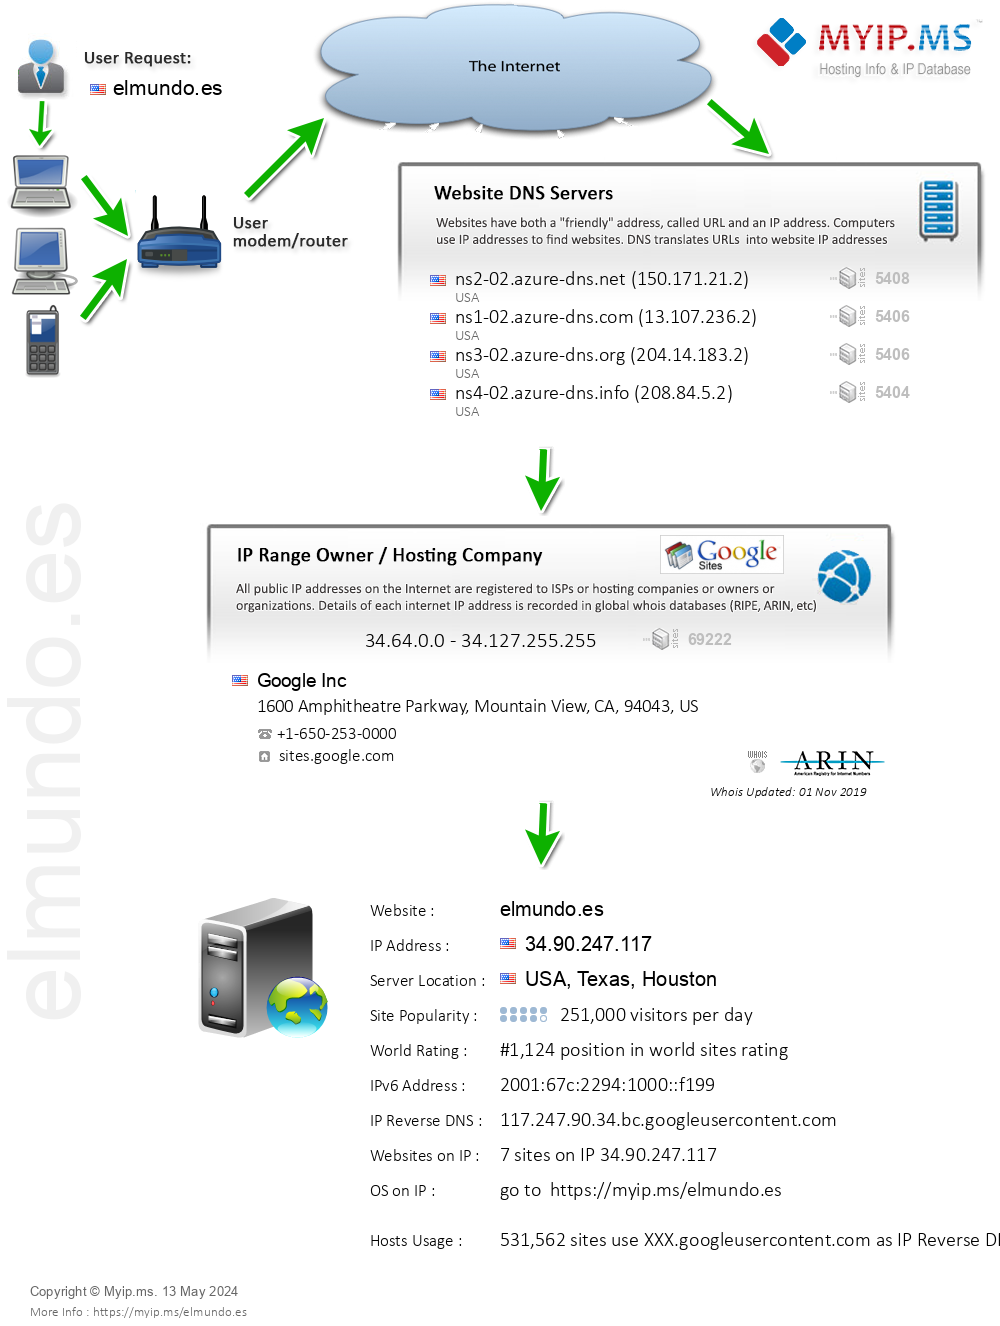 Elmundo.es - Website Hosting Visual IP Diagram